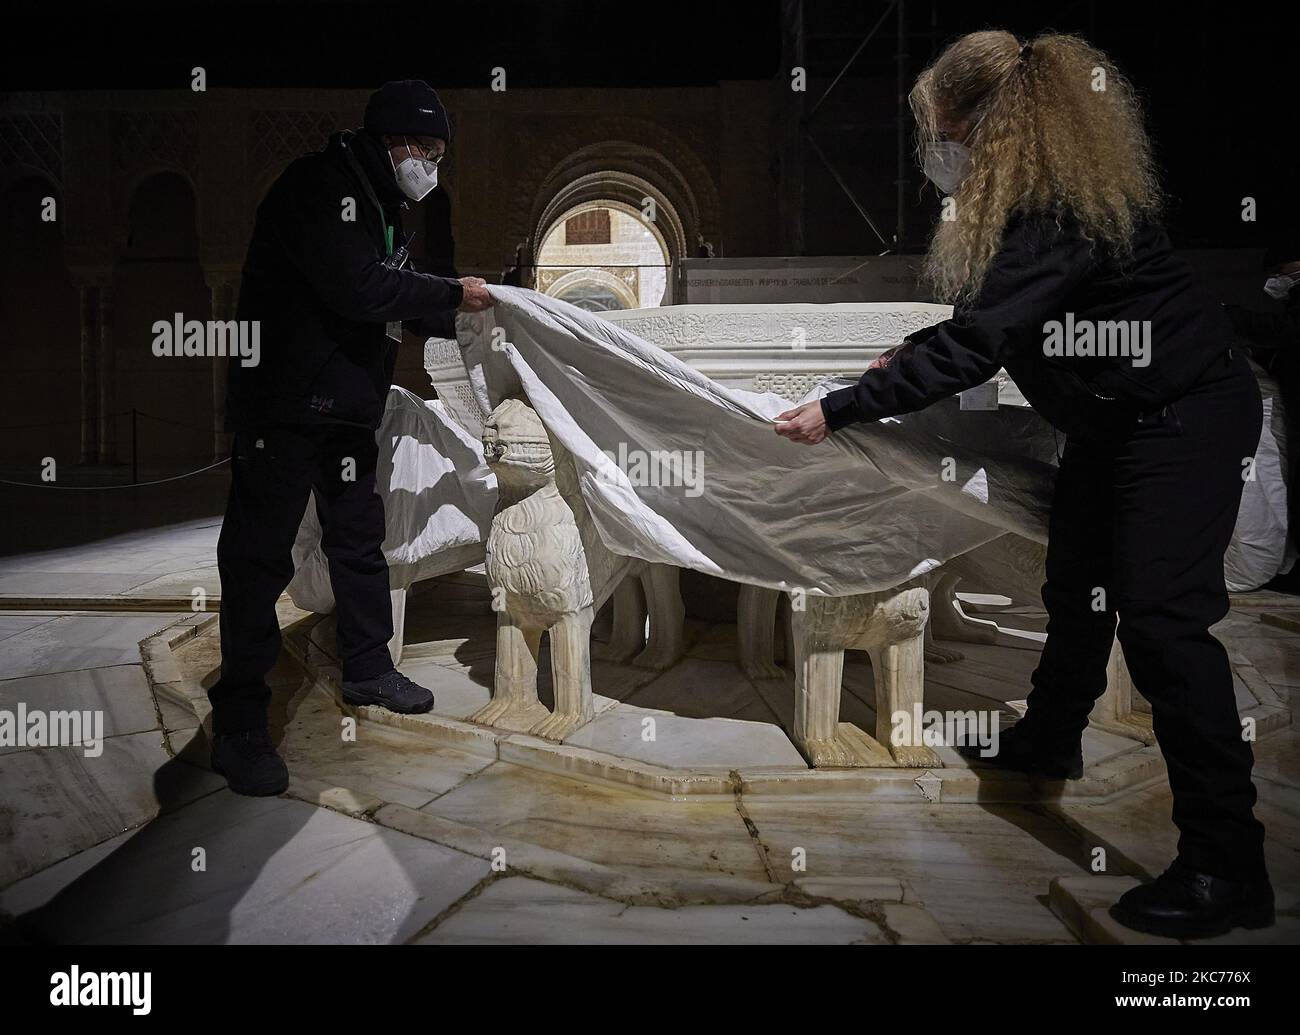 Les travailleurs de l'Alhambra protègent les lions de la célèbre fontaine des Lions de l'Alhambra avec une couverture thermique spéciale en raison des basses températures attendues avec la tempête Filomena sur 9 janvier 2020 à Grenade, en Espagne. L'Espagne est en alerte rouge pour la deuxième journée en raison de la tempête Filomena, qui a provoqué un temps exceptionnellement froid et de fortes chutes de neige. La Fontaine des Lions, dans le patio de los Leones de la Alhambra, a été rouverte après 10 ans de restauration en raison de l'état médiocre des circuits d'eau et du passage du temps et nécessite des précautions spécifiques pour éviter des dommages importants. (Photo de Fermin RO Banque D'Images